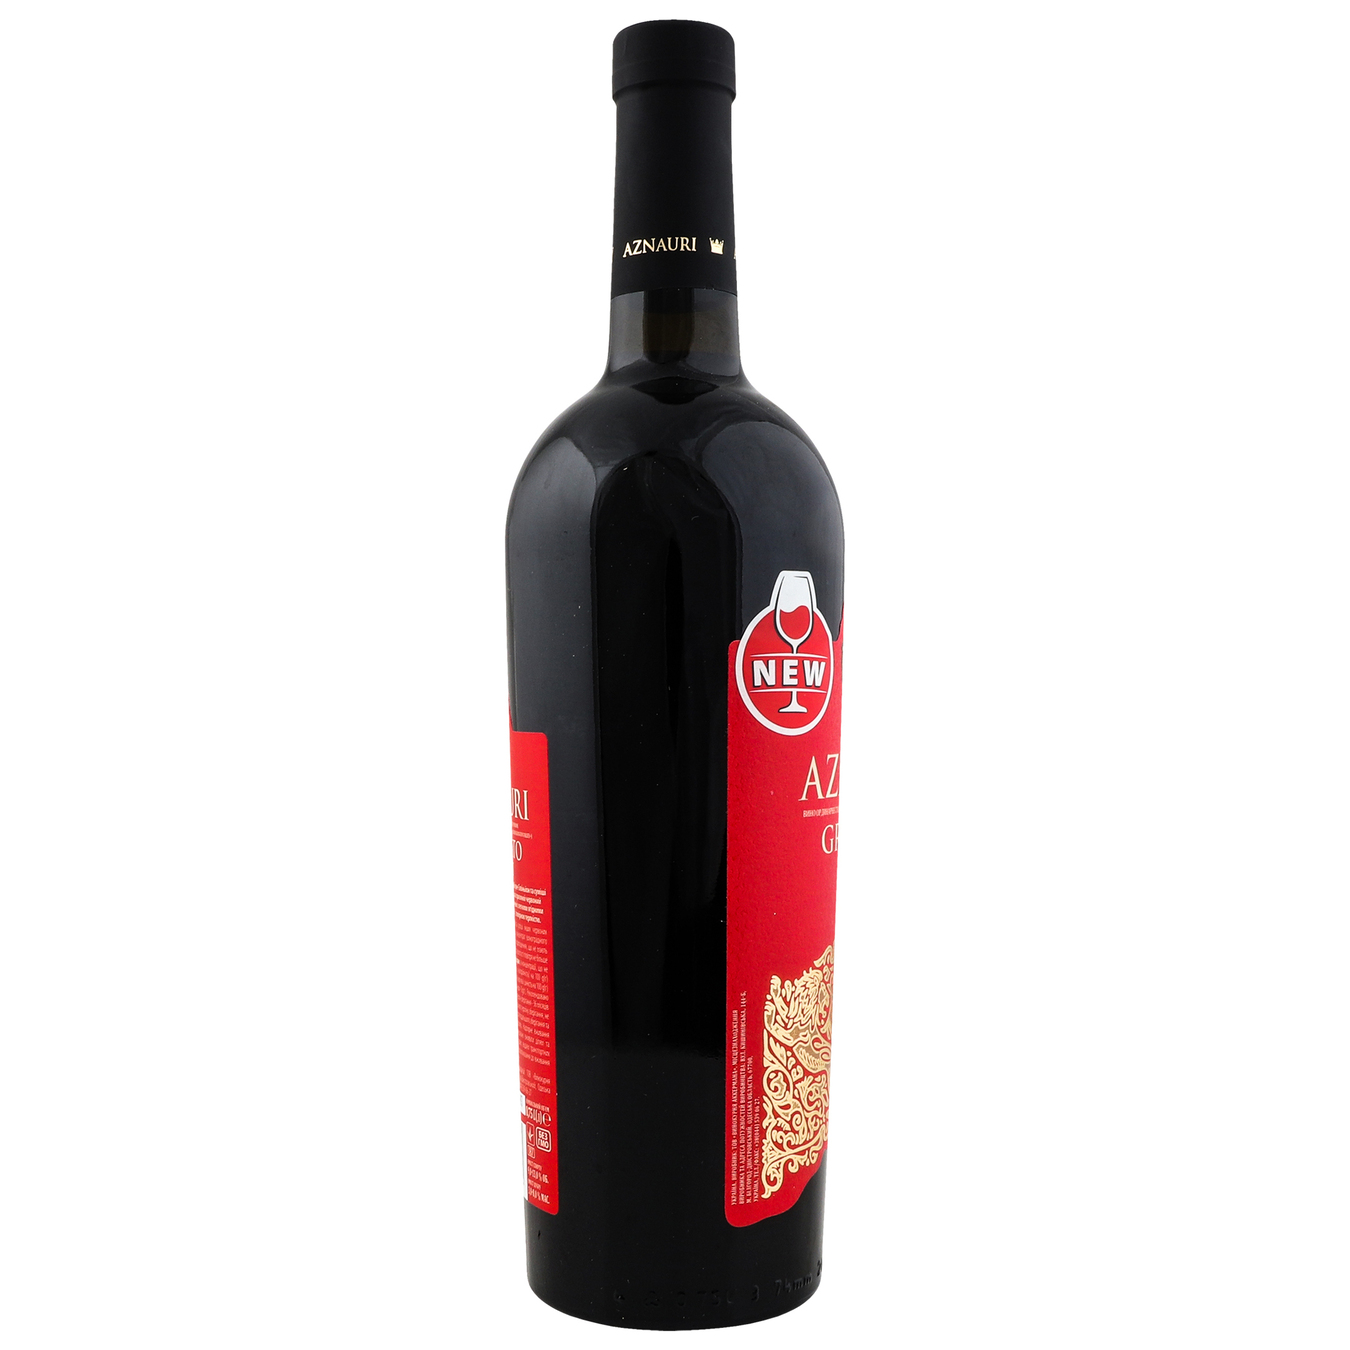 Вино Aznauri Granato Valley красное полусладкое 13% 0,75л 4